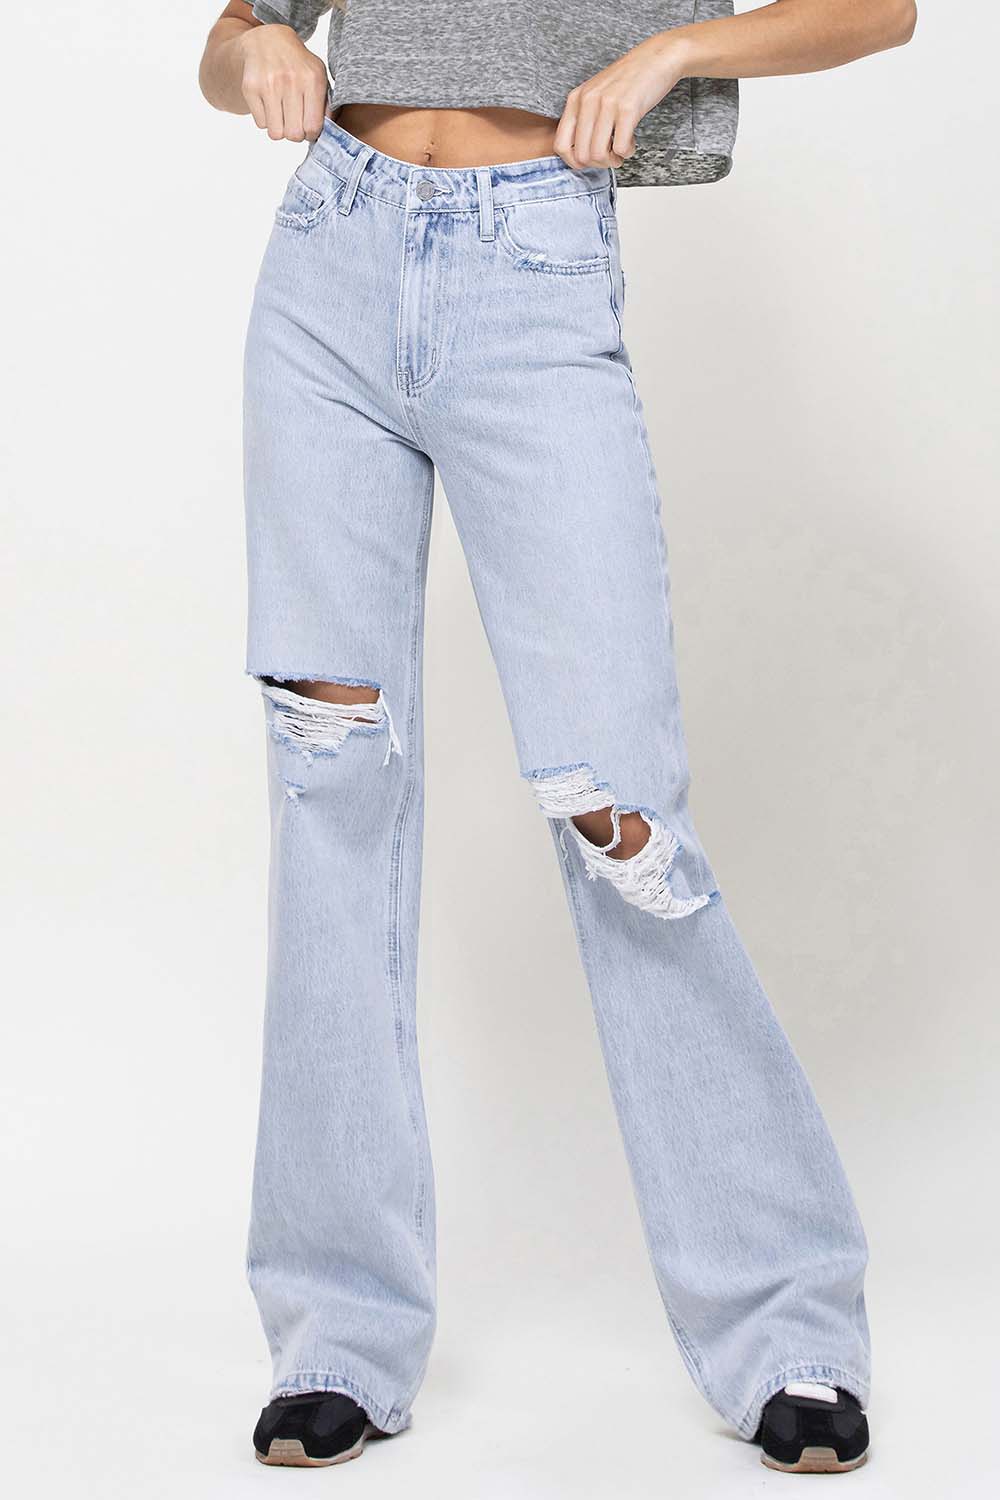 Leslie 90s Flare Hi Waist Jeans by Vervet